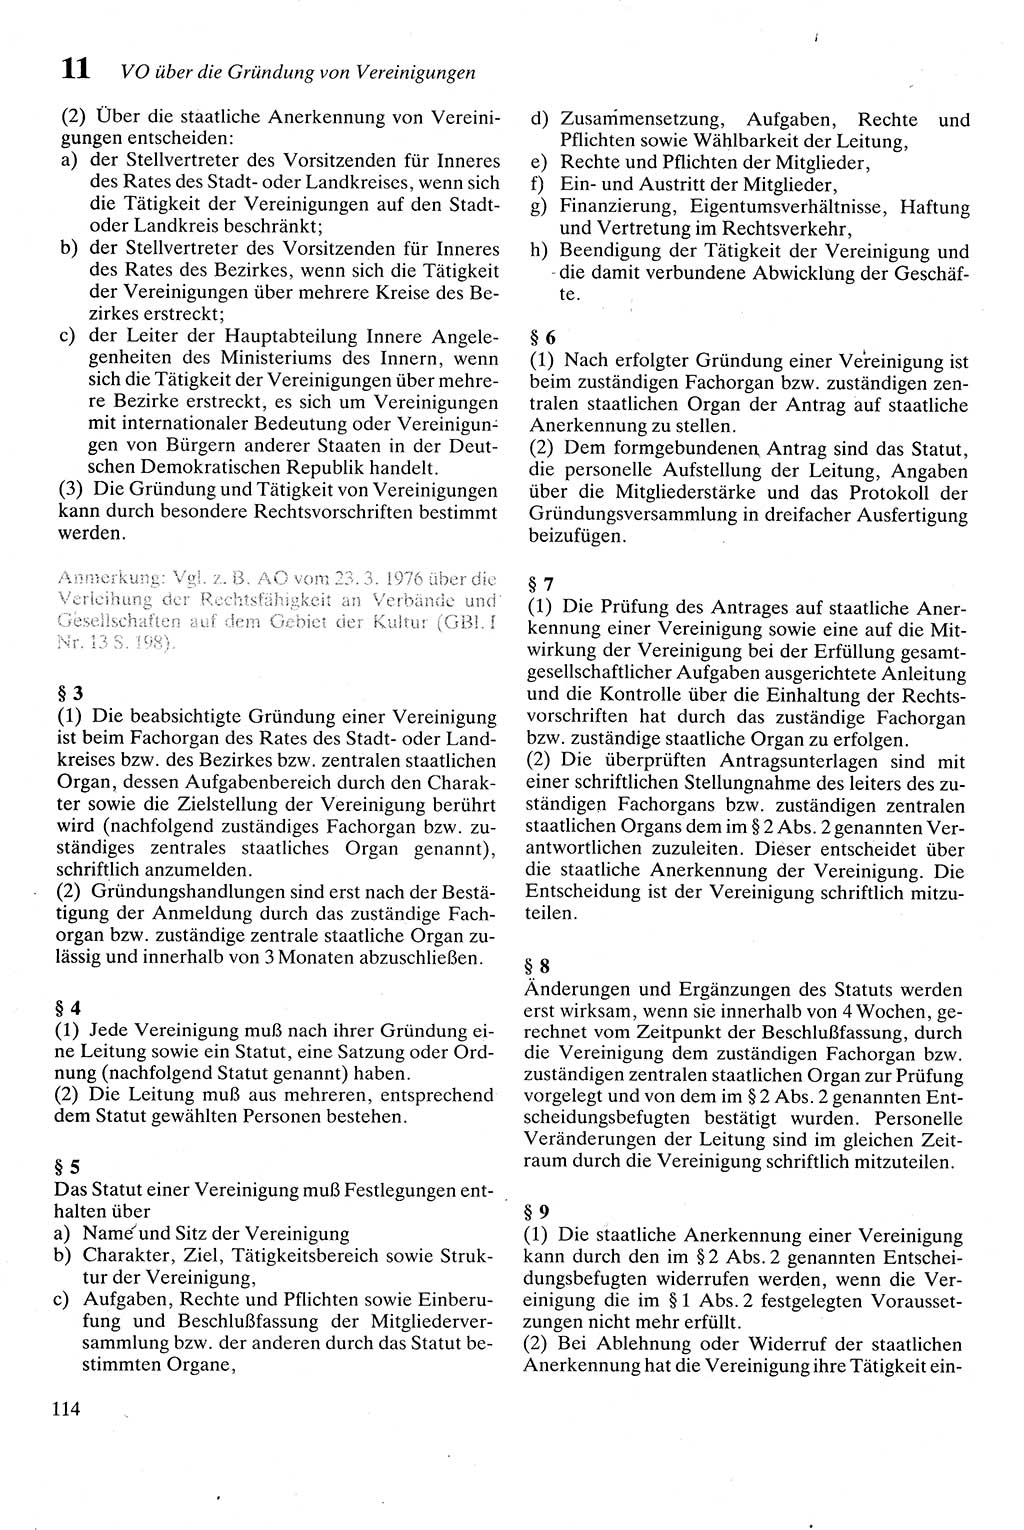 Zivilgesetzbuch (ZVG) sowie angrenzende Gesetze und Bestimmungen [Deutsche Demokratische Republik (DDR)] 1975, Seite 114 (ZGB Ges. Best. DDR 1975, S. 114)